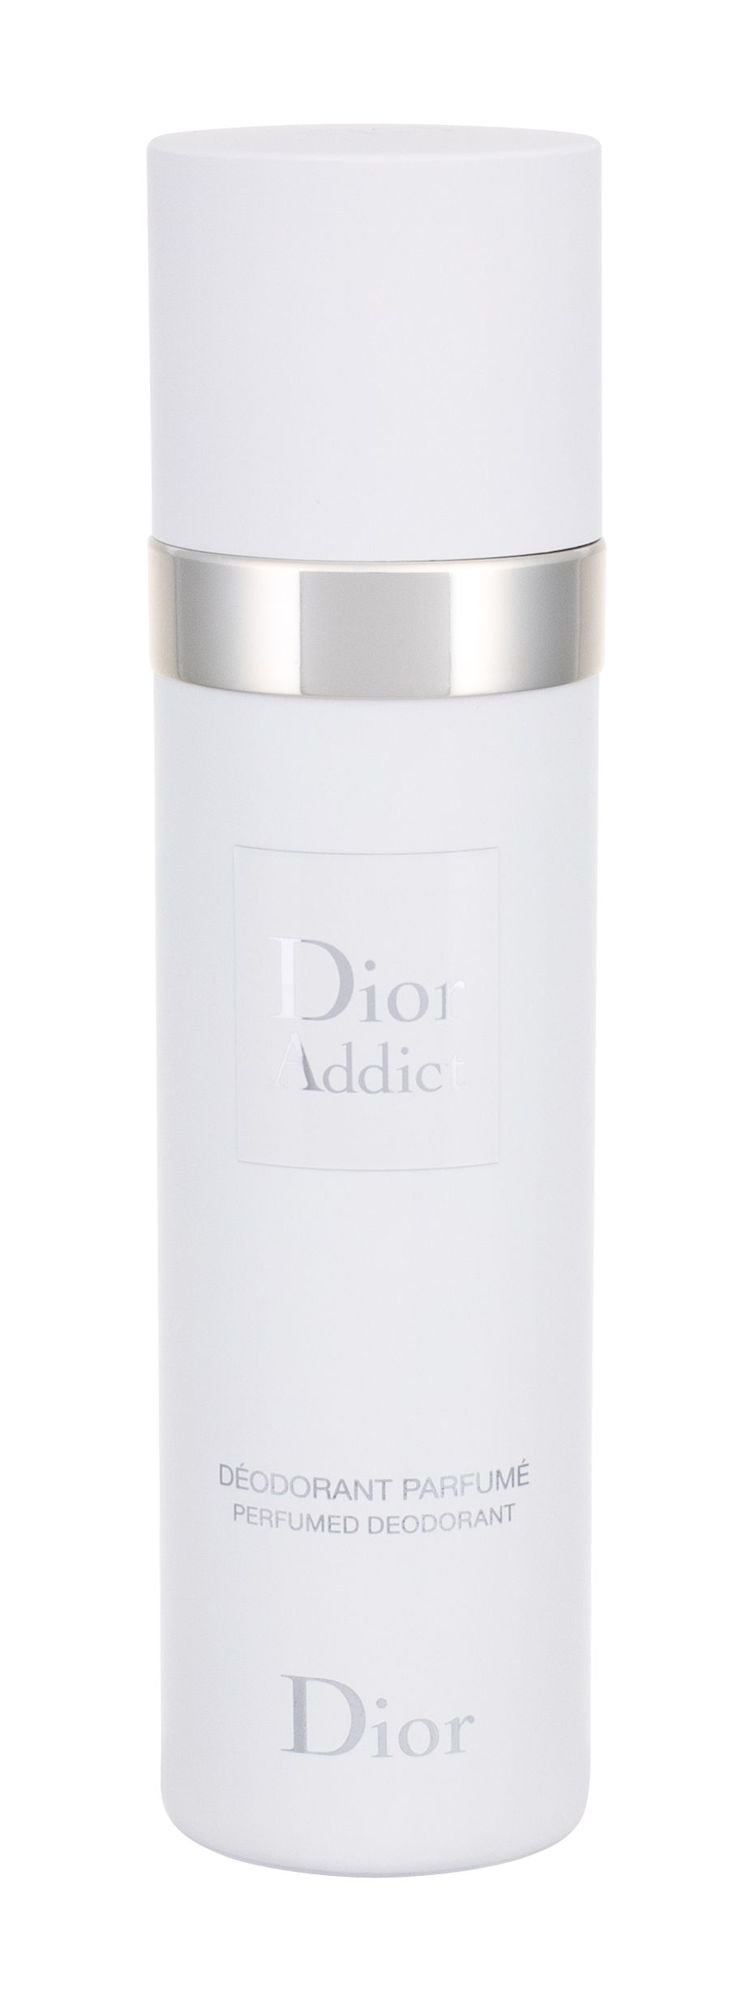 Christian Dior Addict, Deodorant 100ml